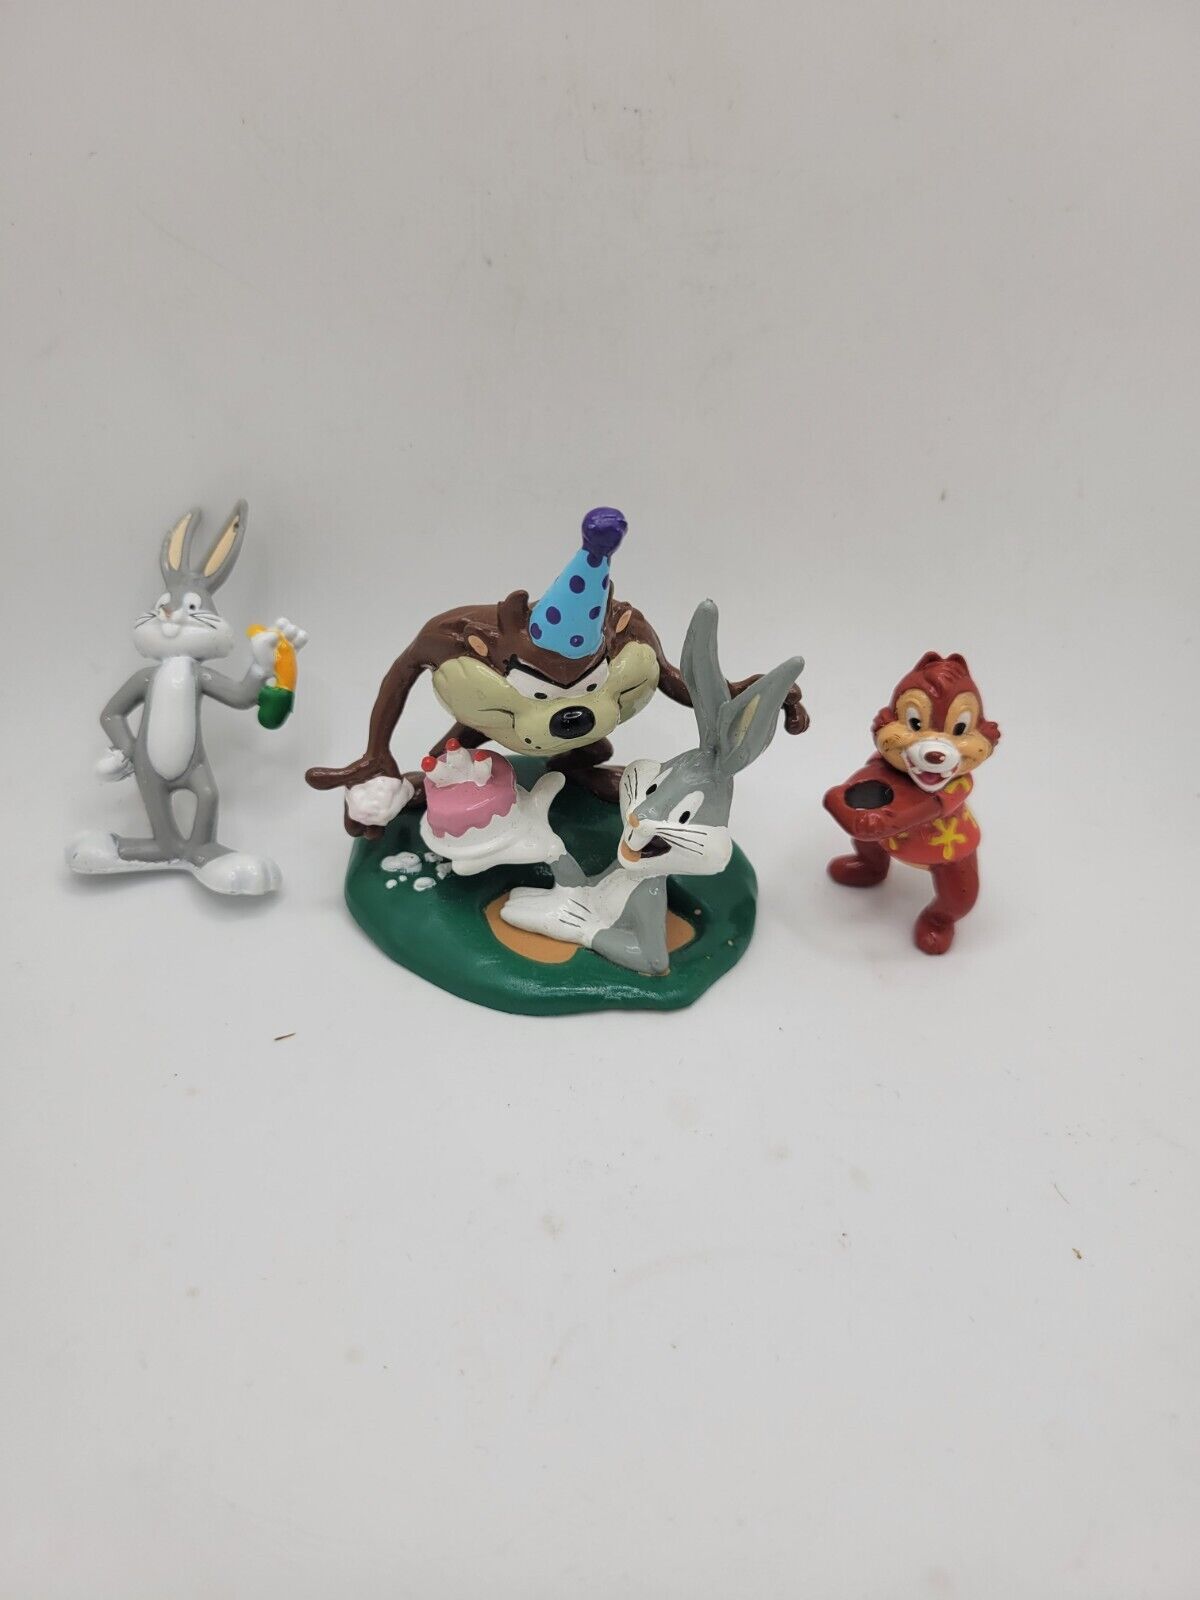 Vintage Warner Bros Looney Toon 90s Toy Figurines Bugs Bunny Tasmanian Devil